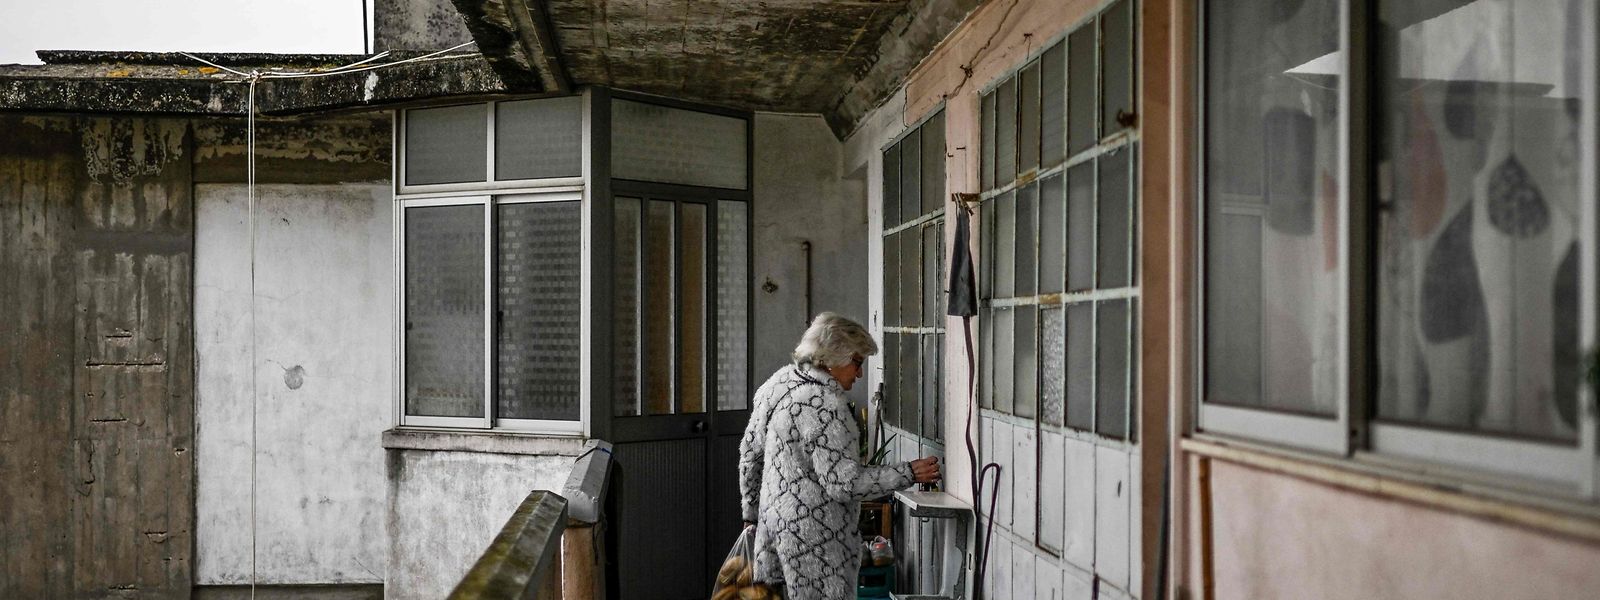 Francisca Chagas, de 75 anos, vive há mais de 40 anos num prédio em Chelas e nunca teve aquecimento em casa